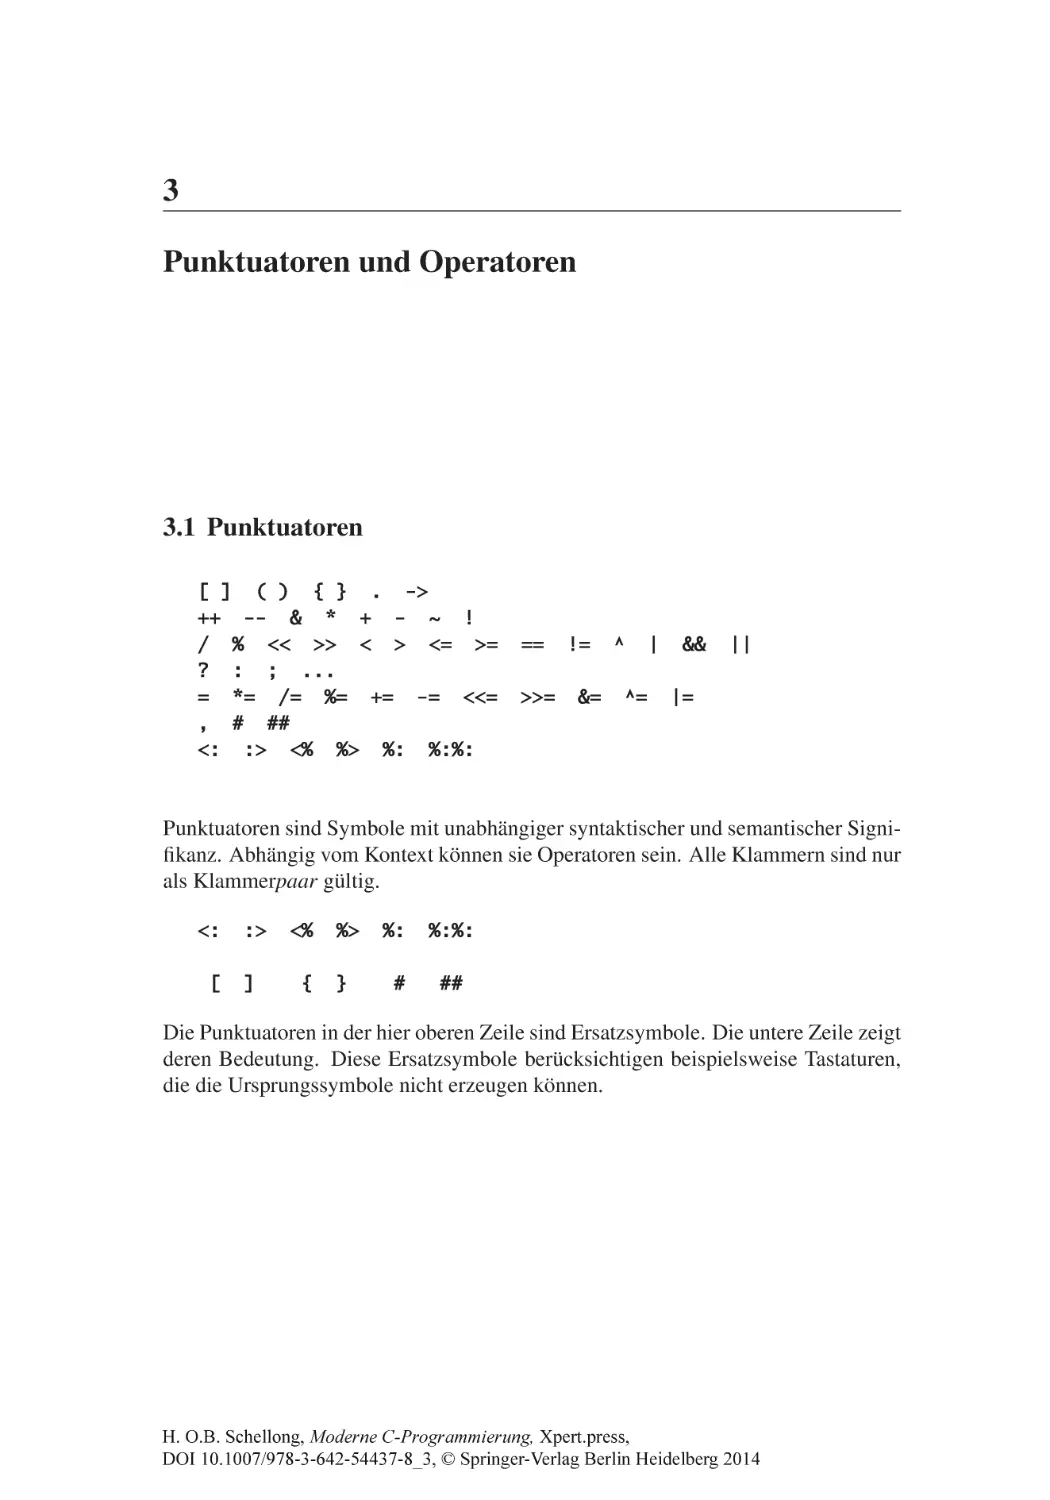 3 Punktuatoren und Operatoren
3.1 Punktuatoren